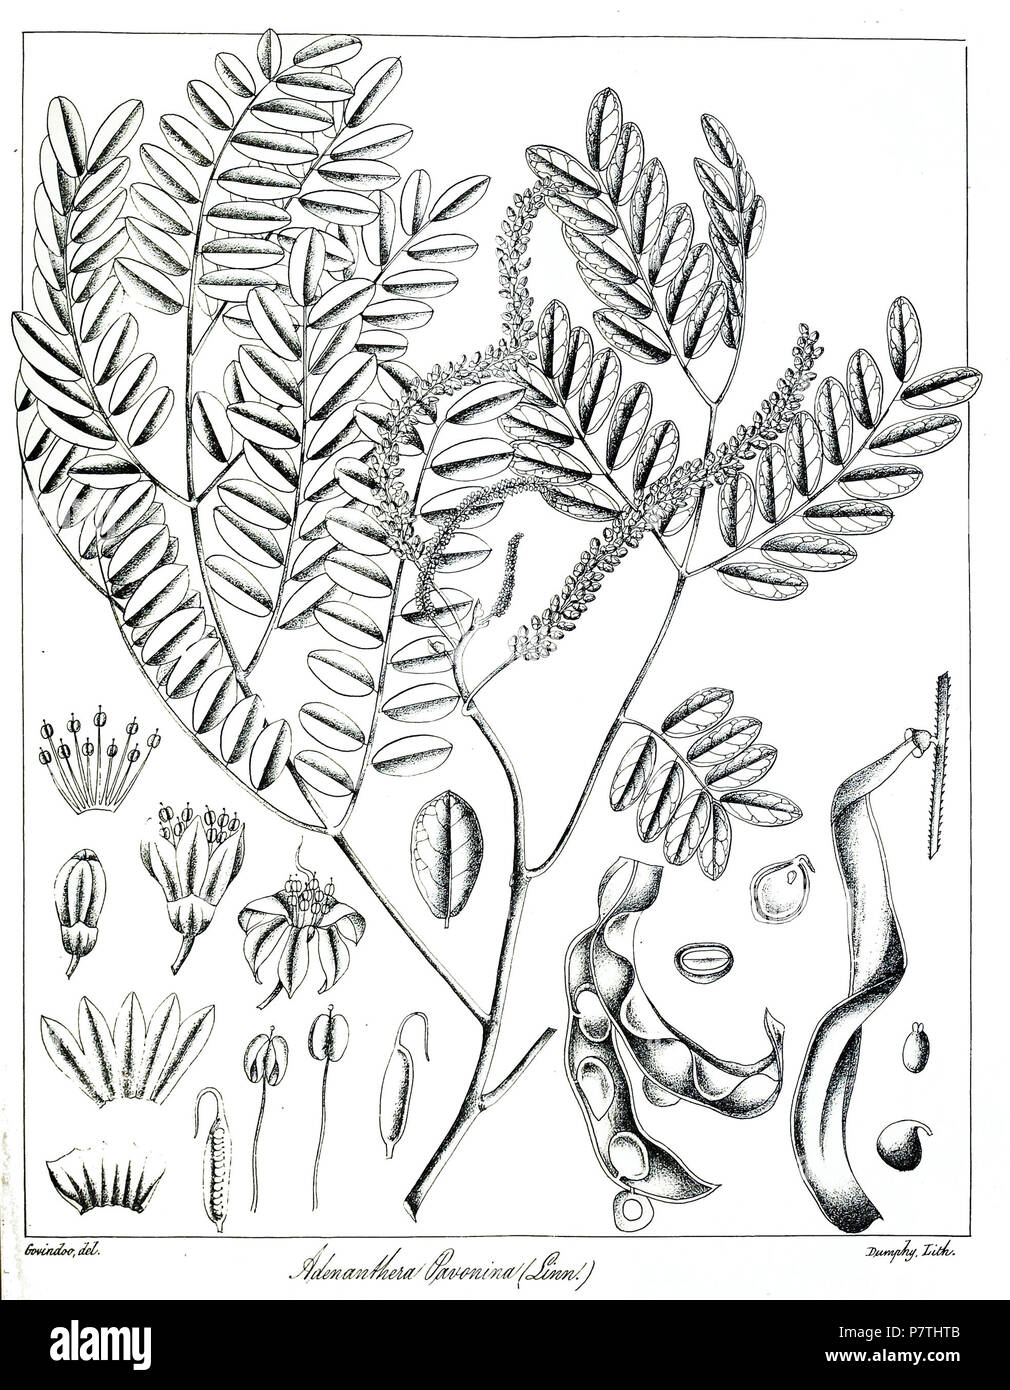 Adenanthera pavonina . 1873 13 Adenanthera pavonina Govindoo Stock Photo